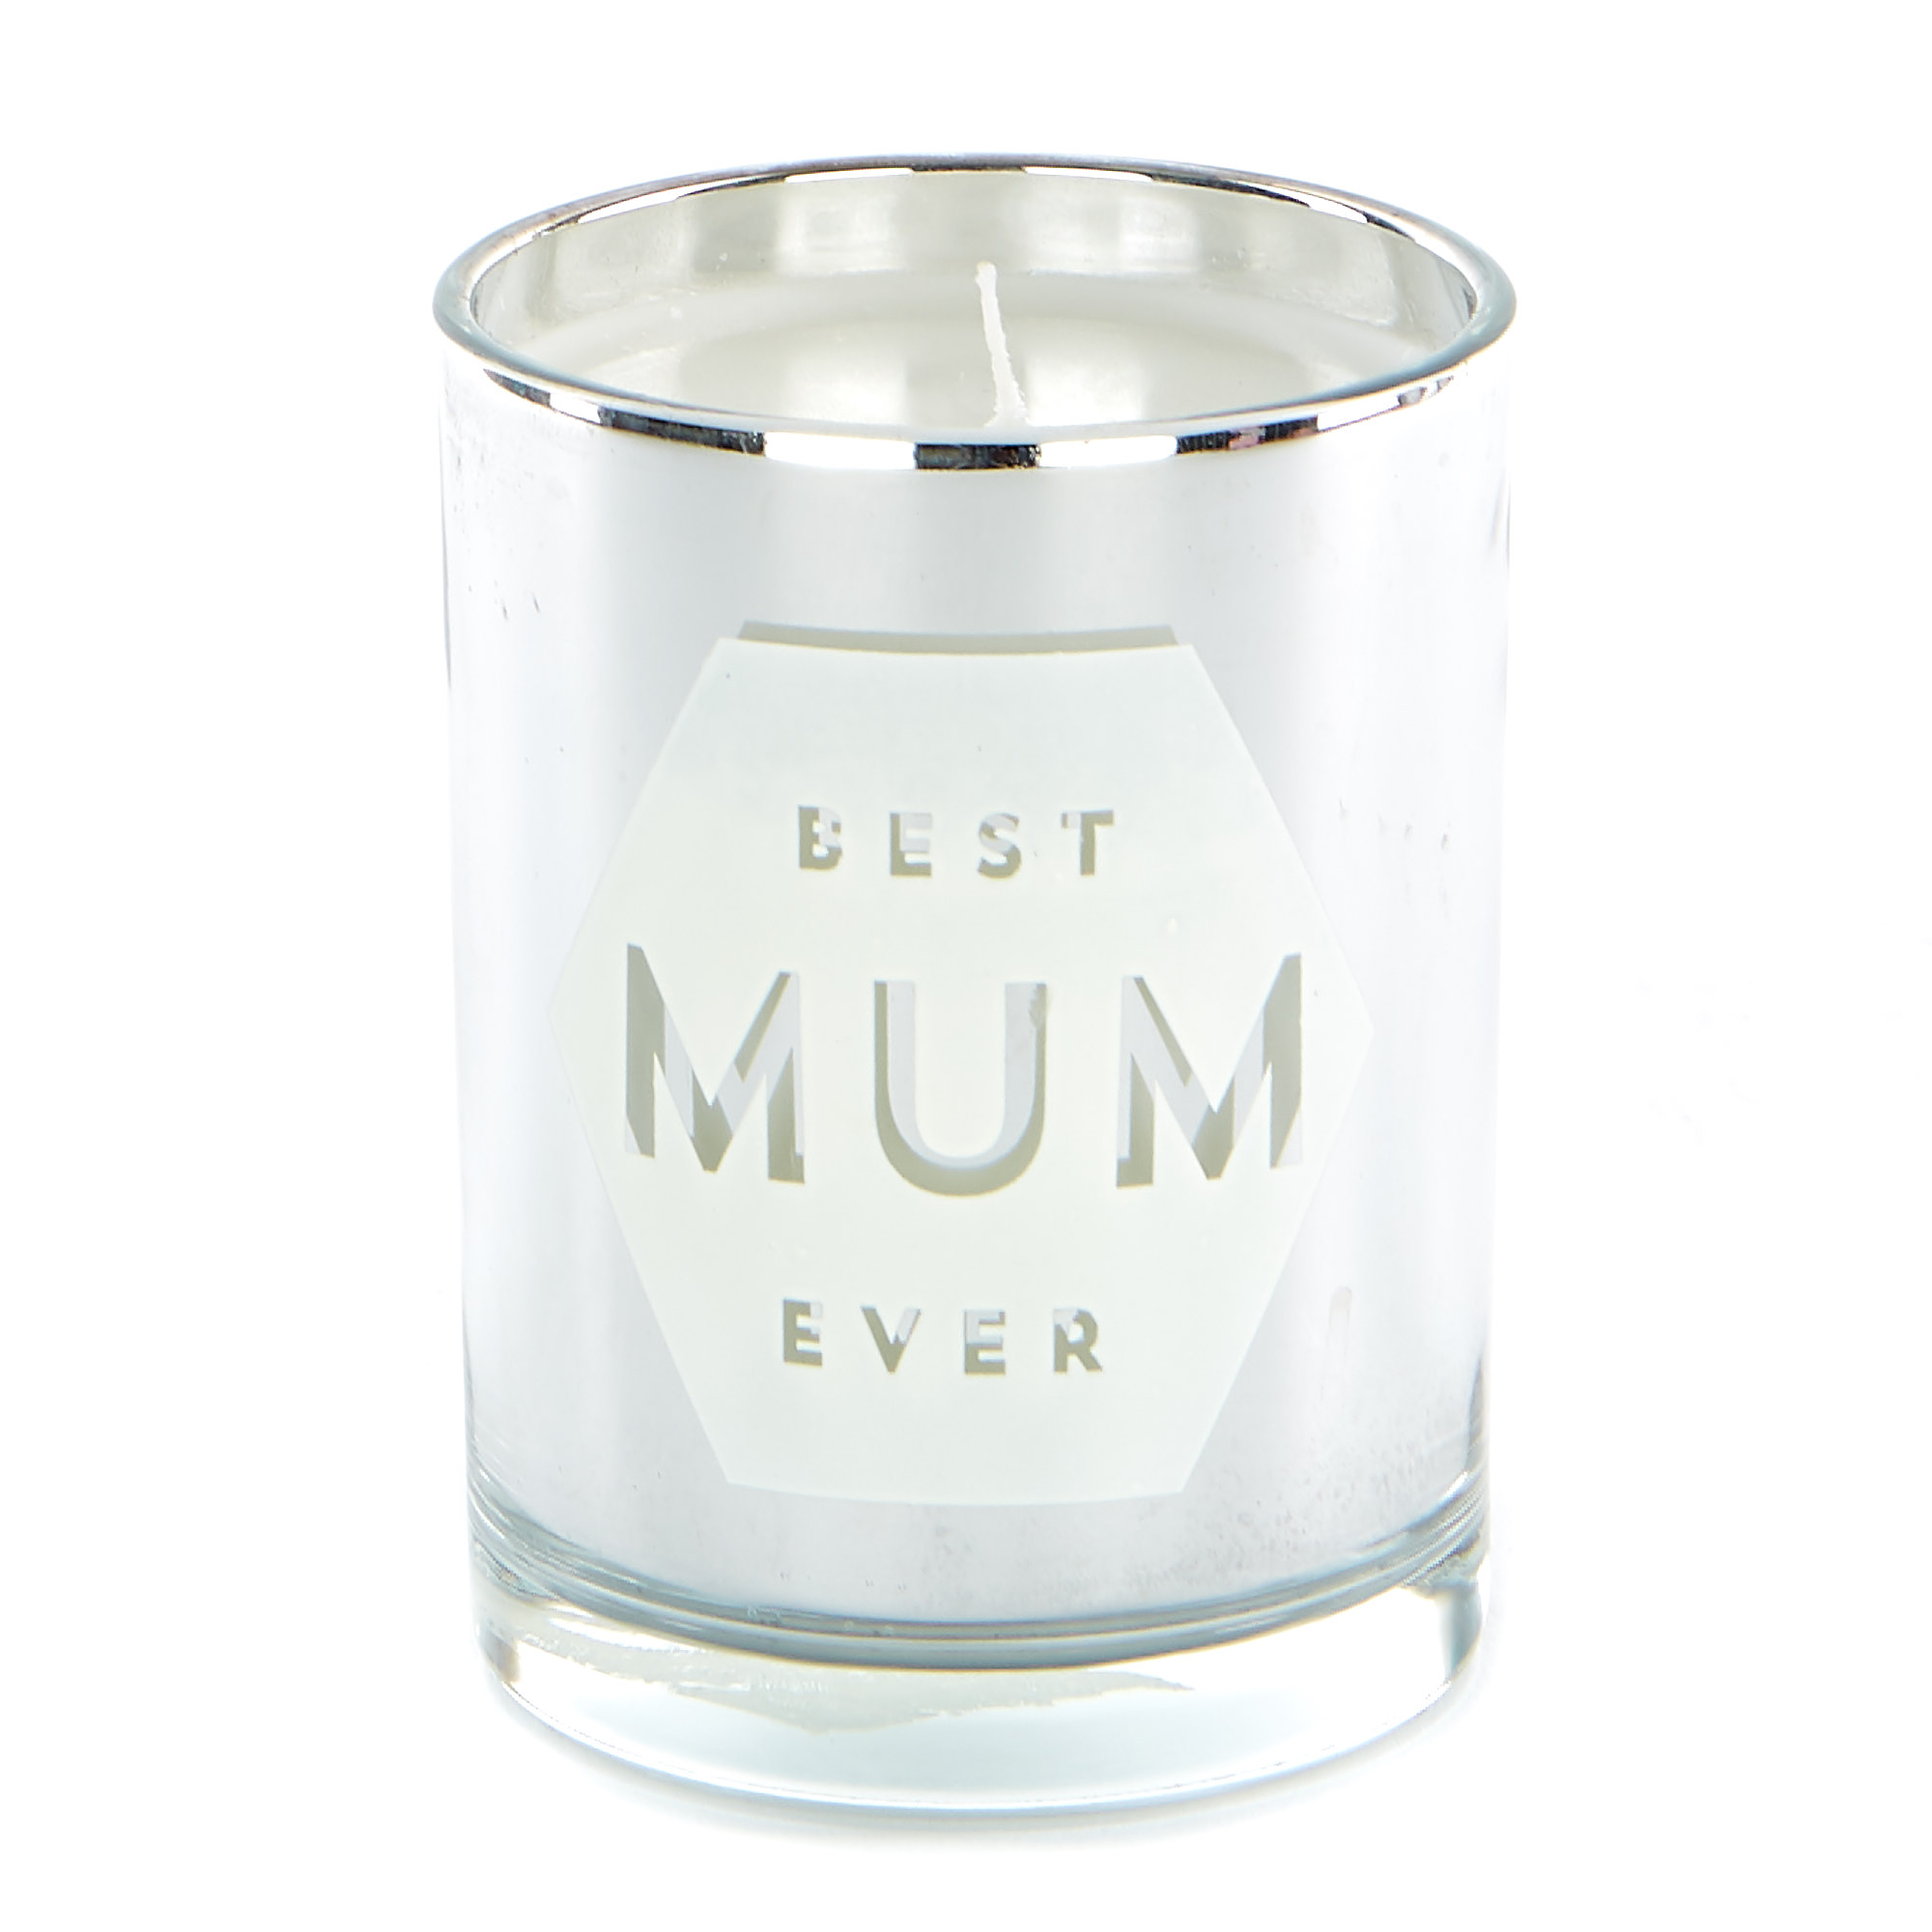 Best Mum Ever Vanilla Scented Candle